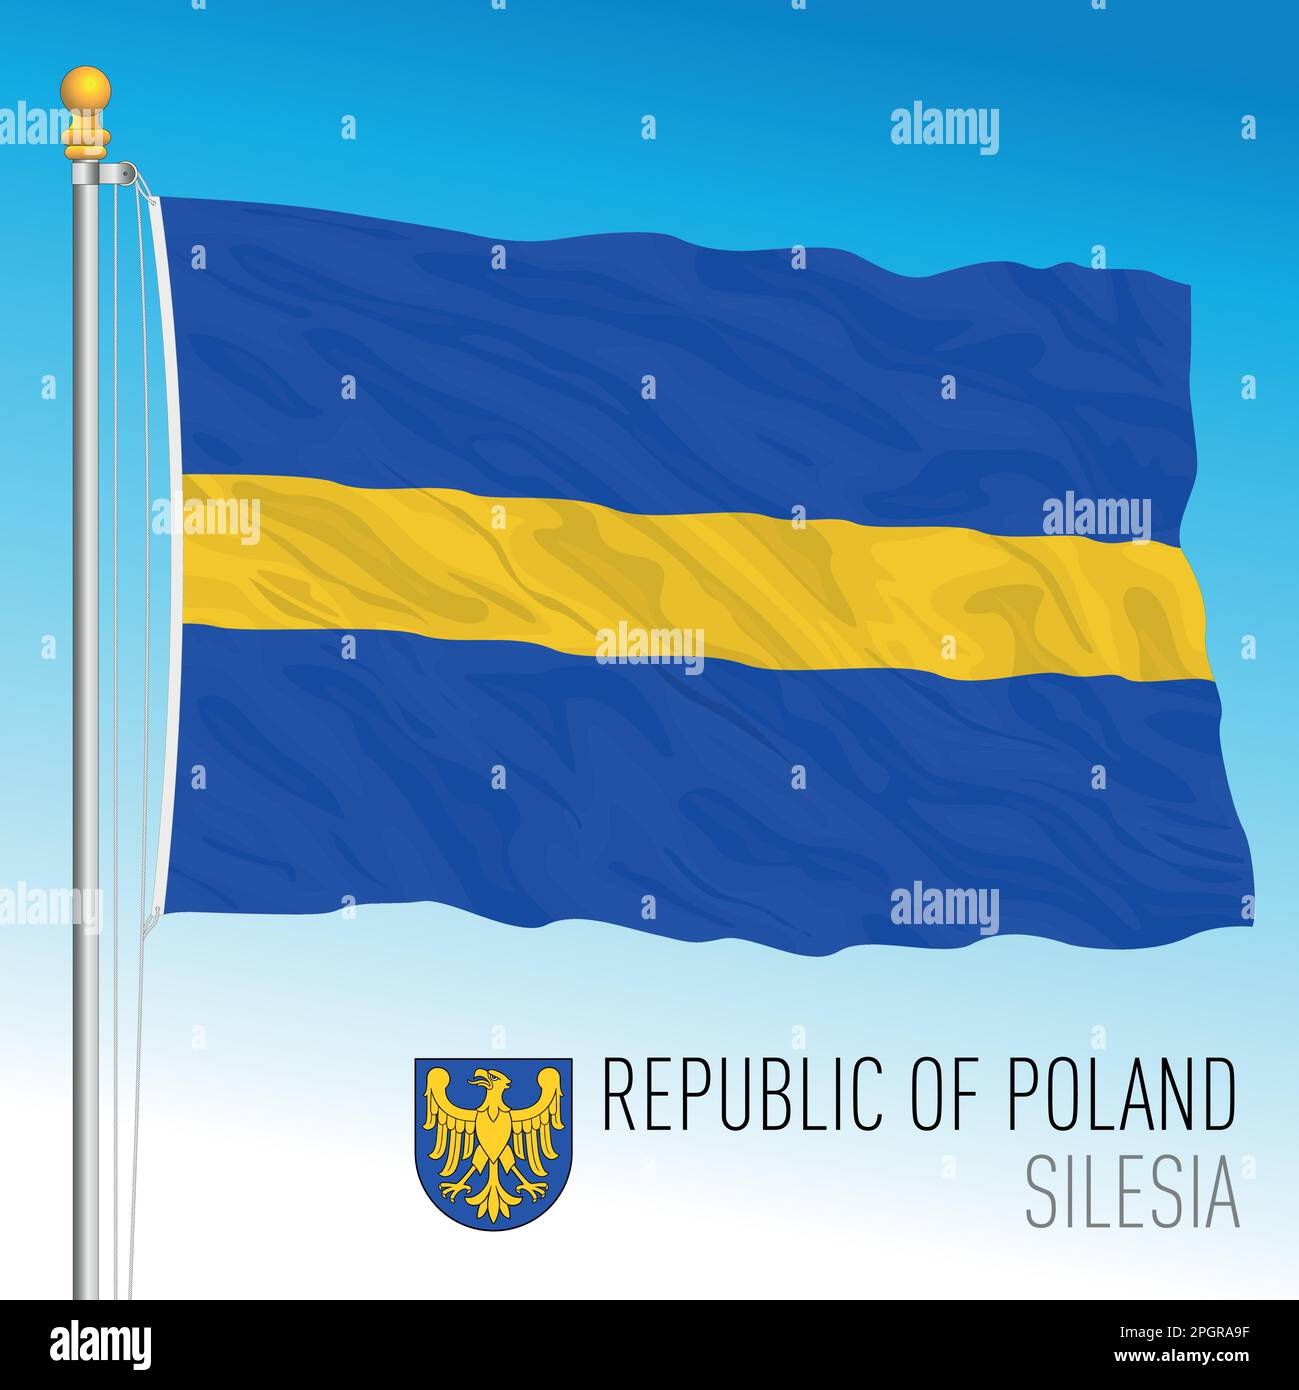 Bandiera regionale della Slesia e stemma, Repubblica di Polonia, paese europeo, illustrazione vettoriale Illustrazione Vettoriale